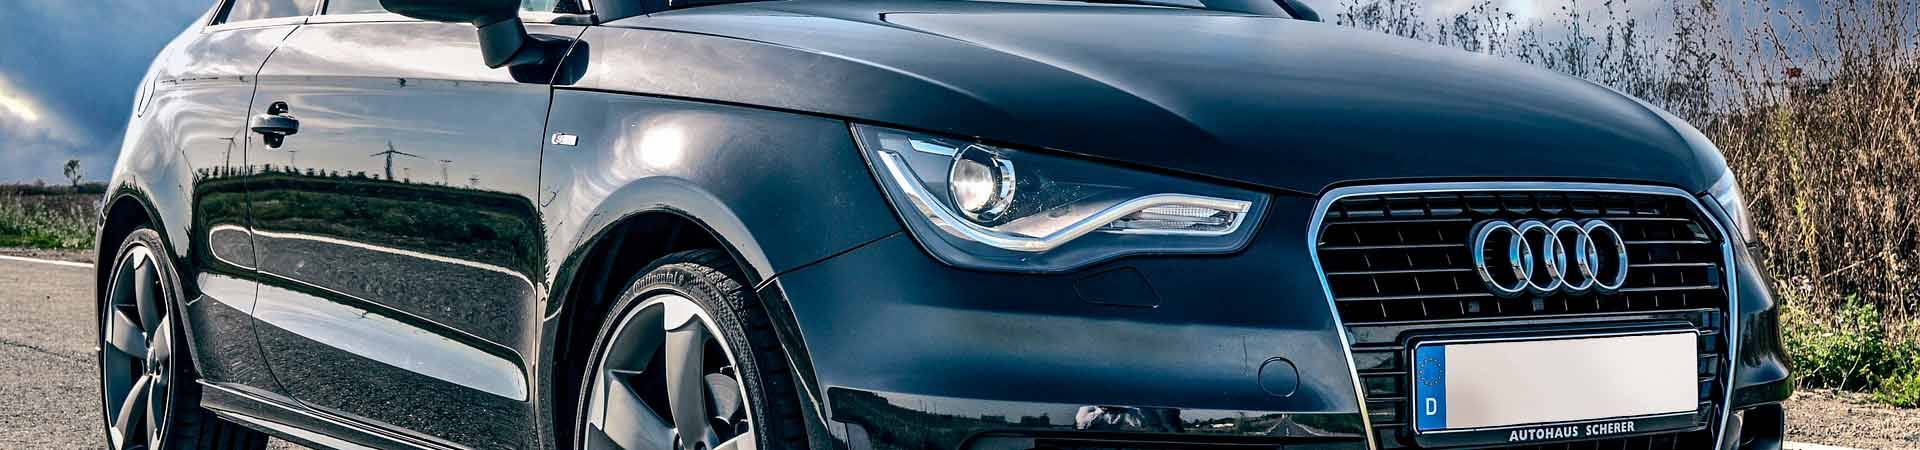 Servicio autorizado y garantía oficial Audi